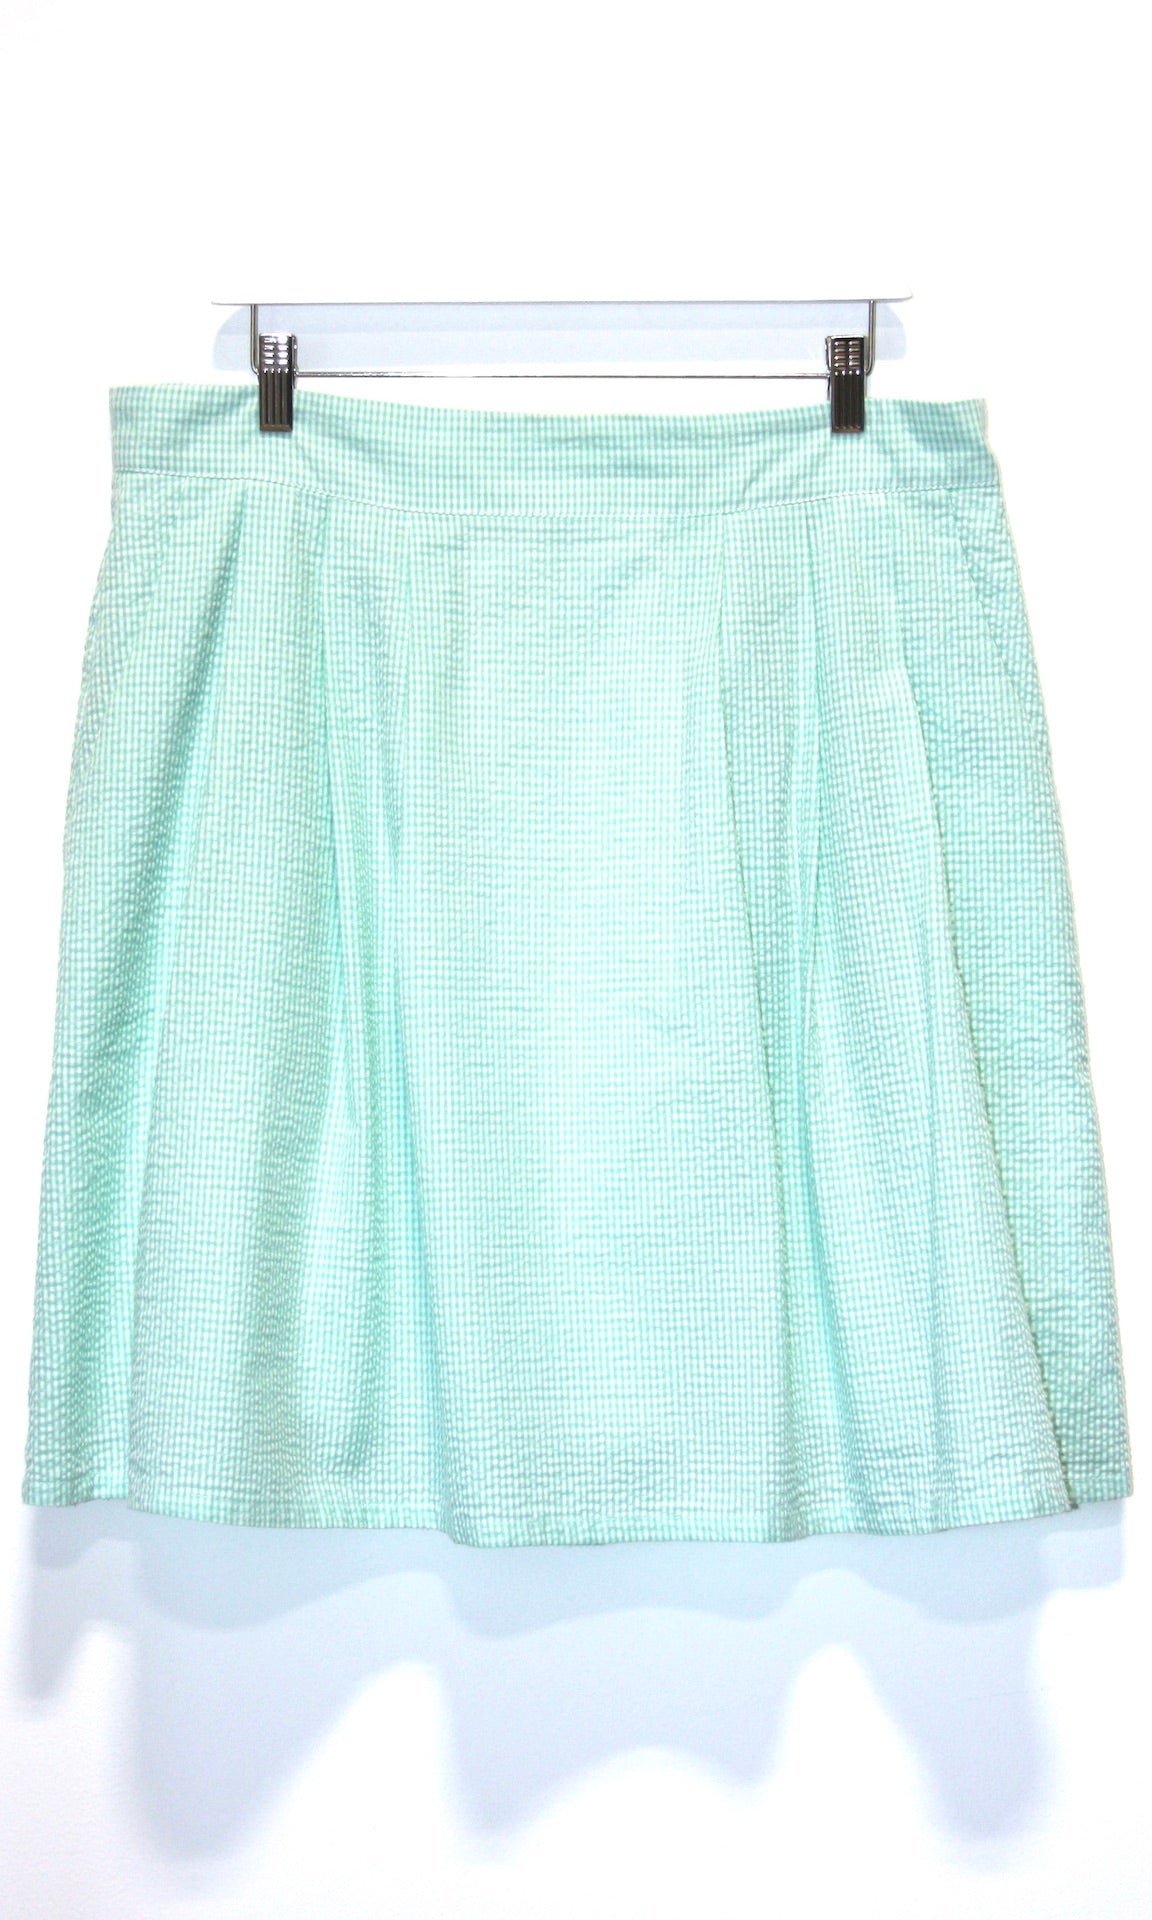 RN418 - 16 - Starique Skirt - Mint Seersucker